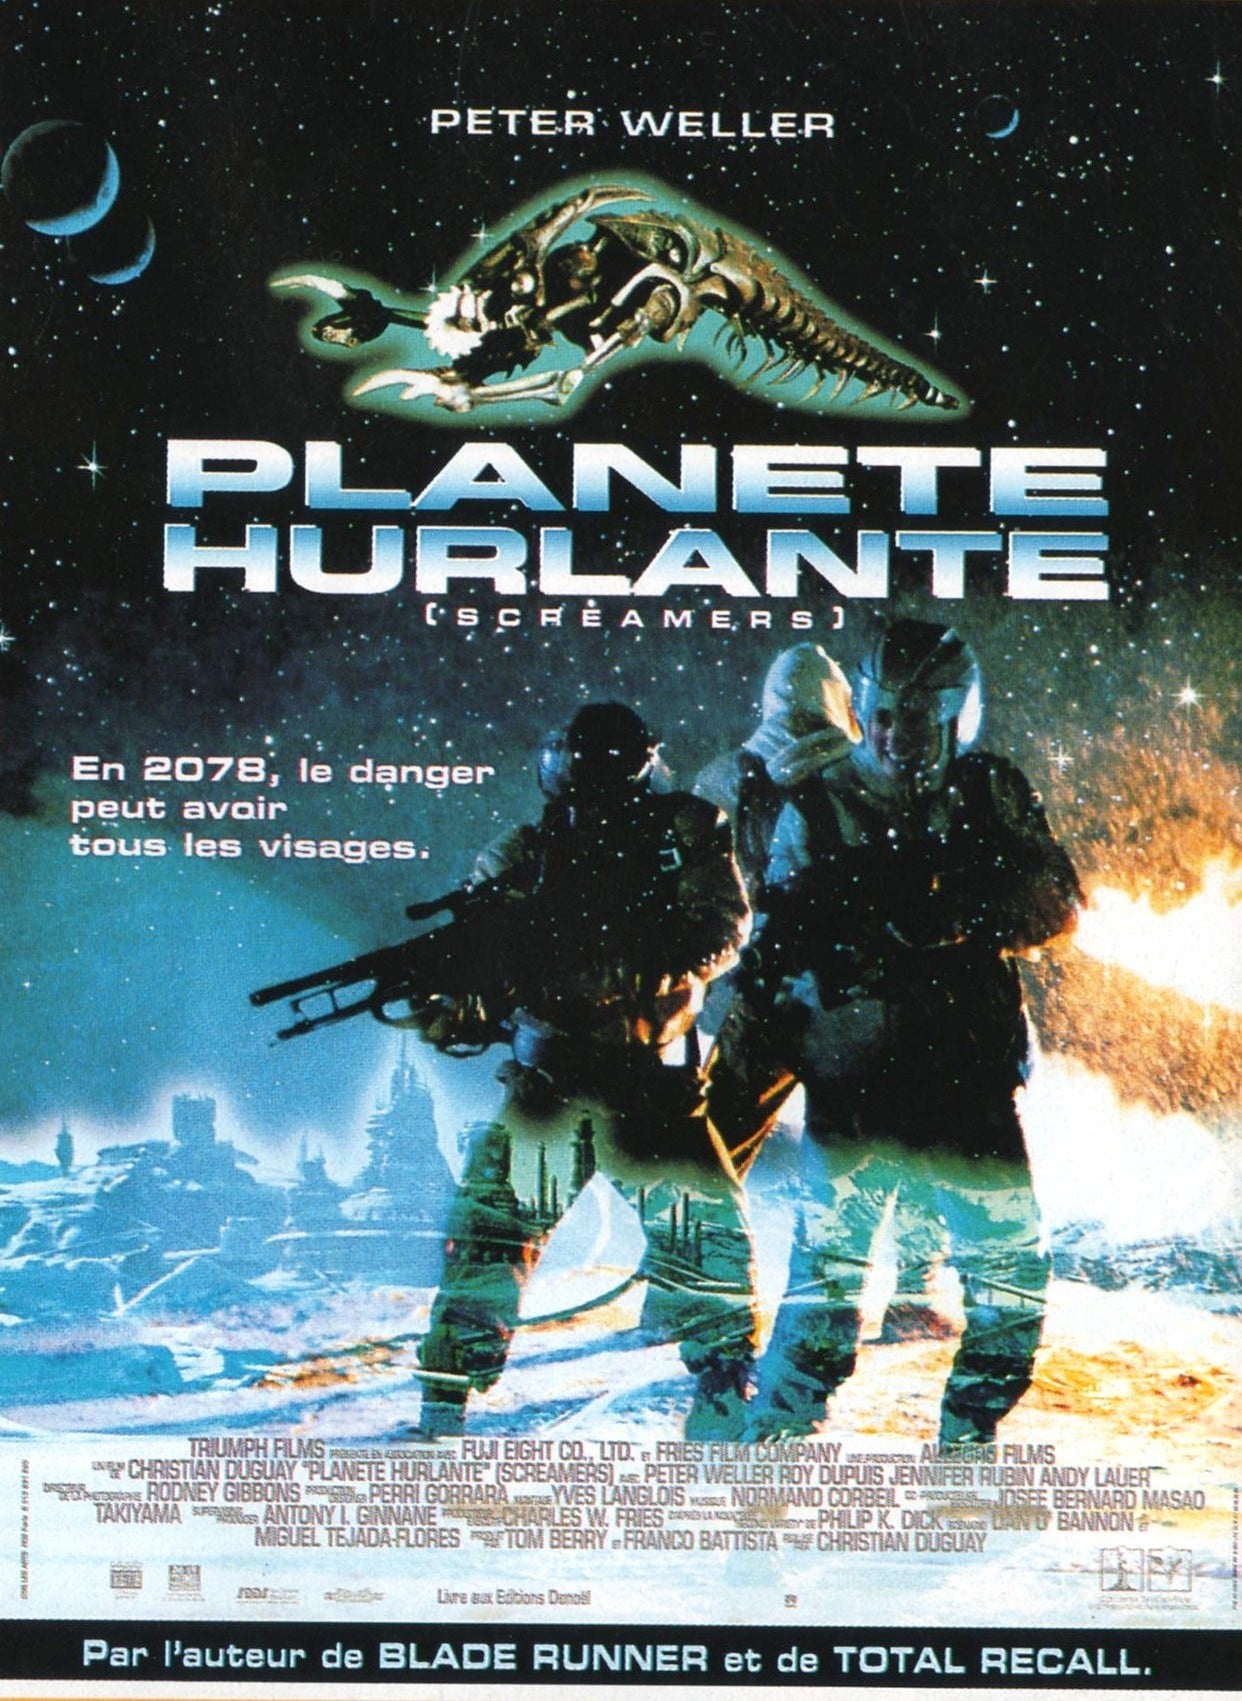 Affiche du film "Planète hurlante"